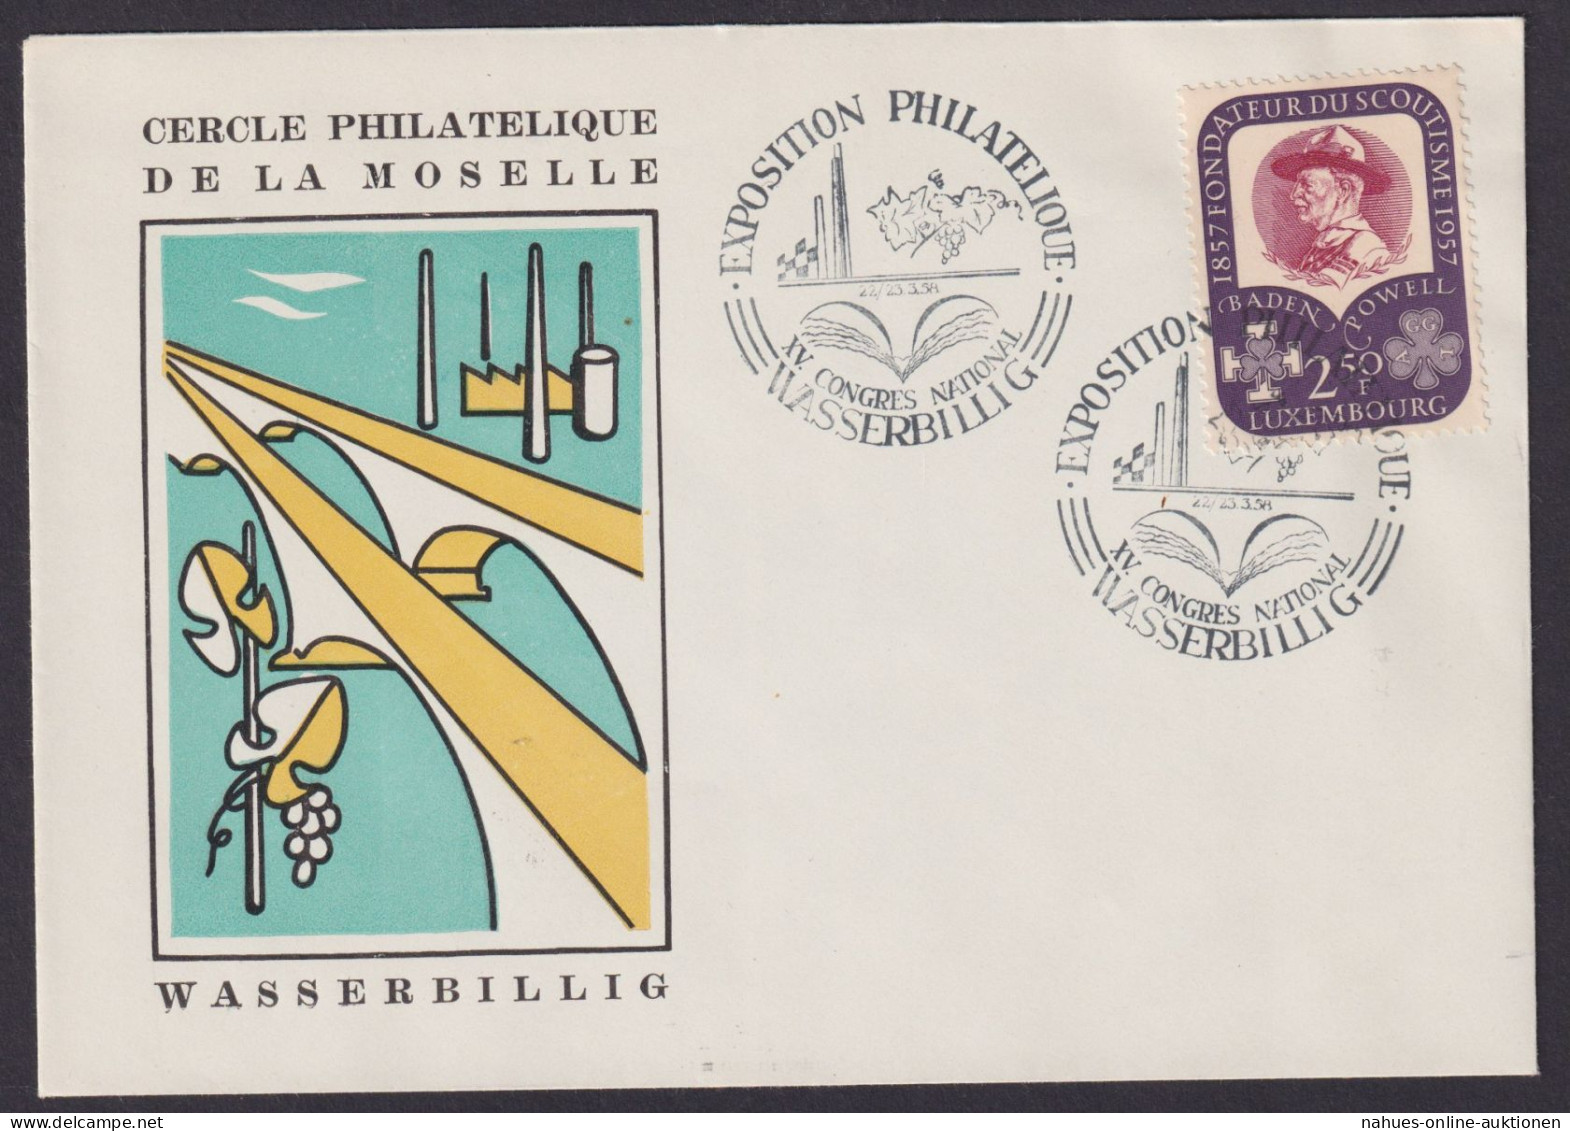 Wasserbillig Europa Luxemburg Philatelie Briefmarken Ausstellung Pfadfinder 1958 - Lettres & Documents